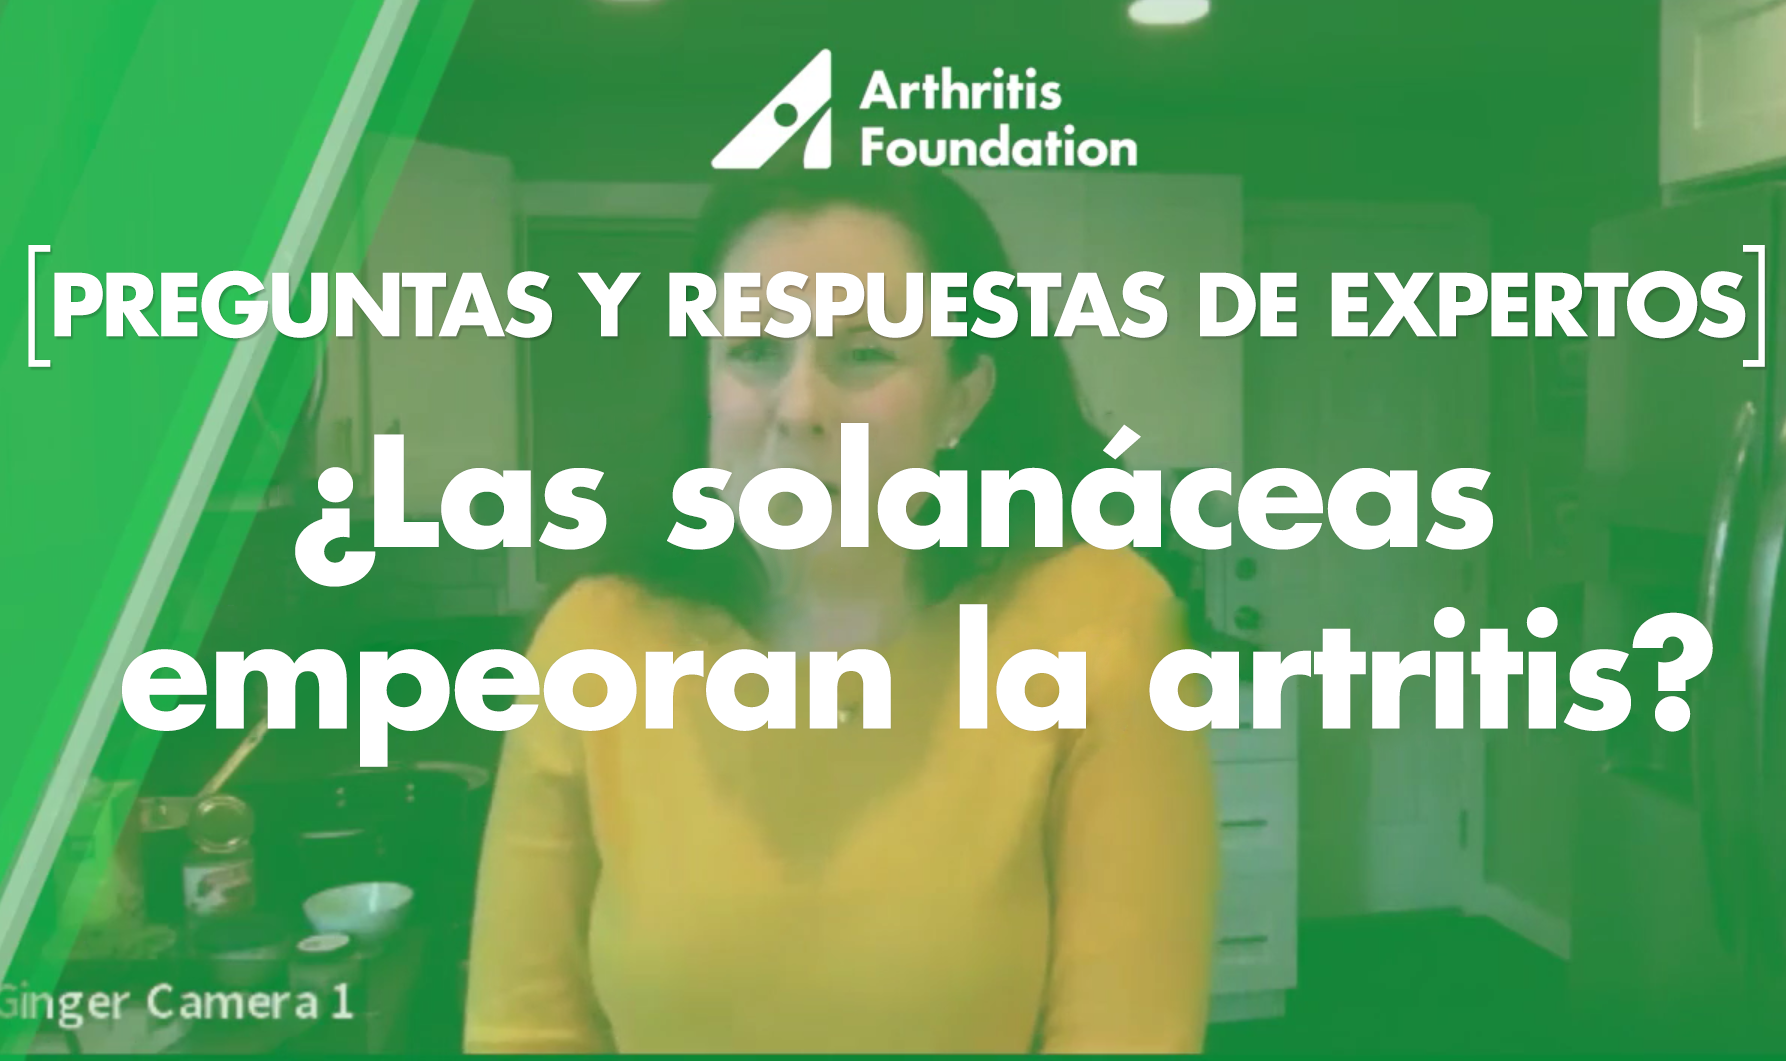 Preguntas y respuestas de expertos: ¿Los solanáceos empeoran la artritis?